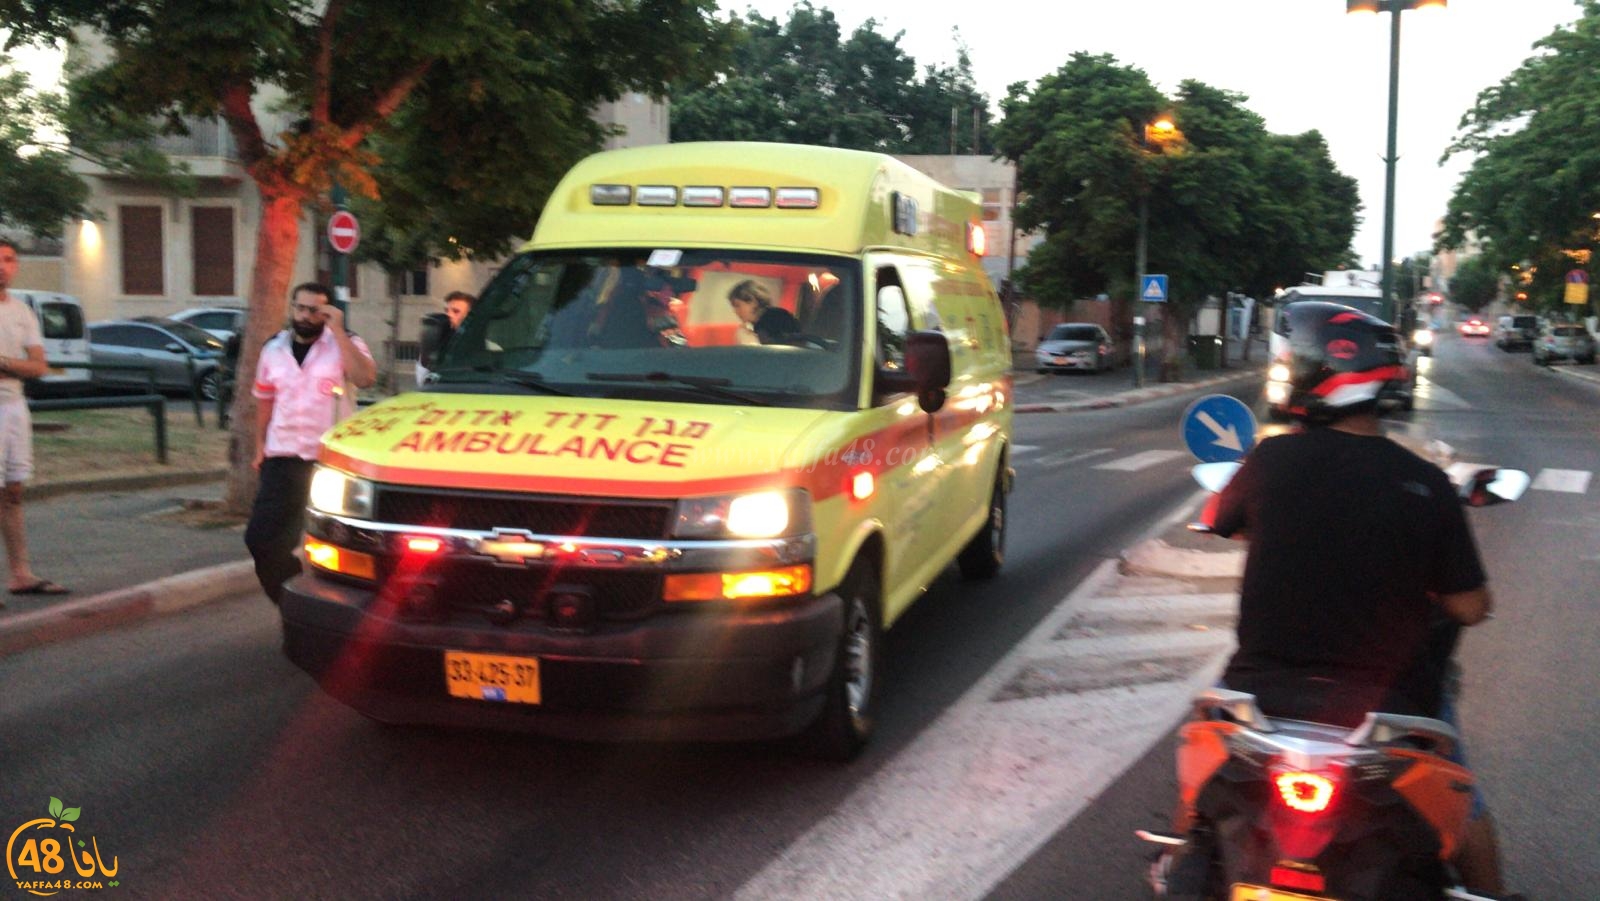  يافا: إصابة متوسطة لرجل بحادث دهس وسط المدينة